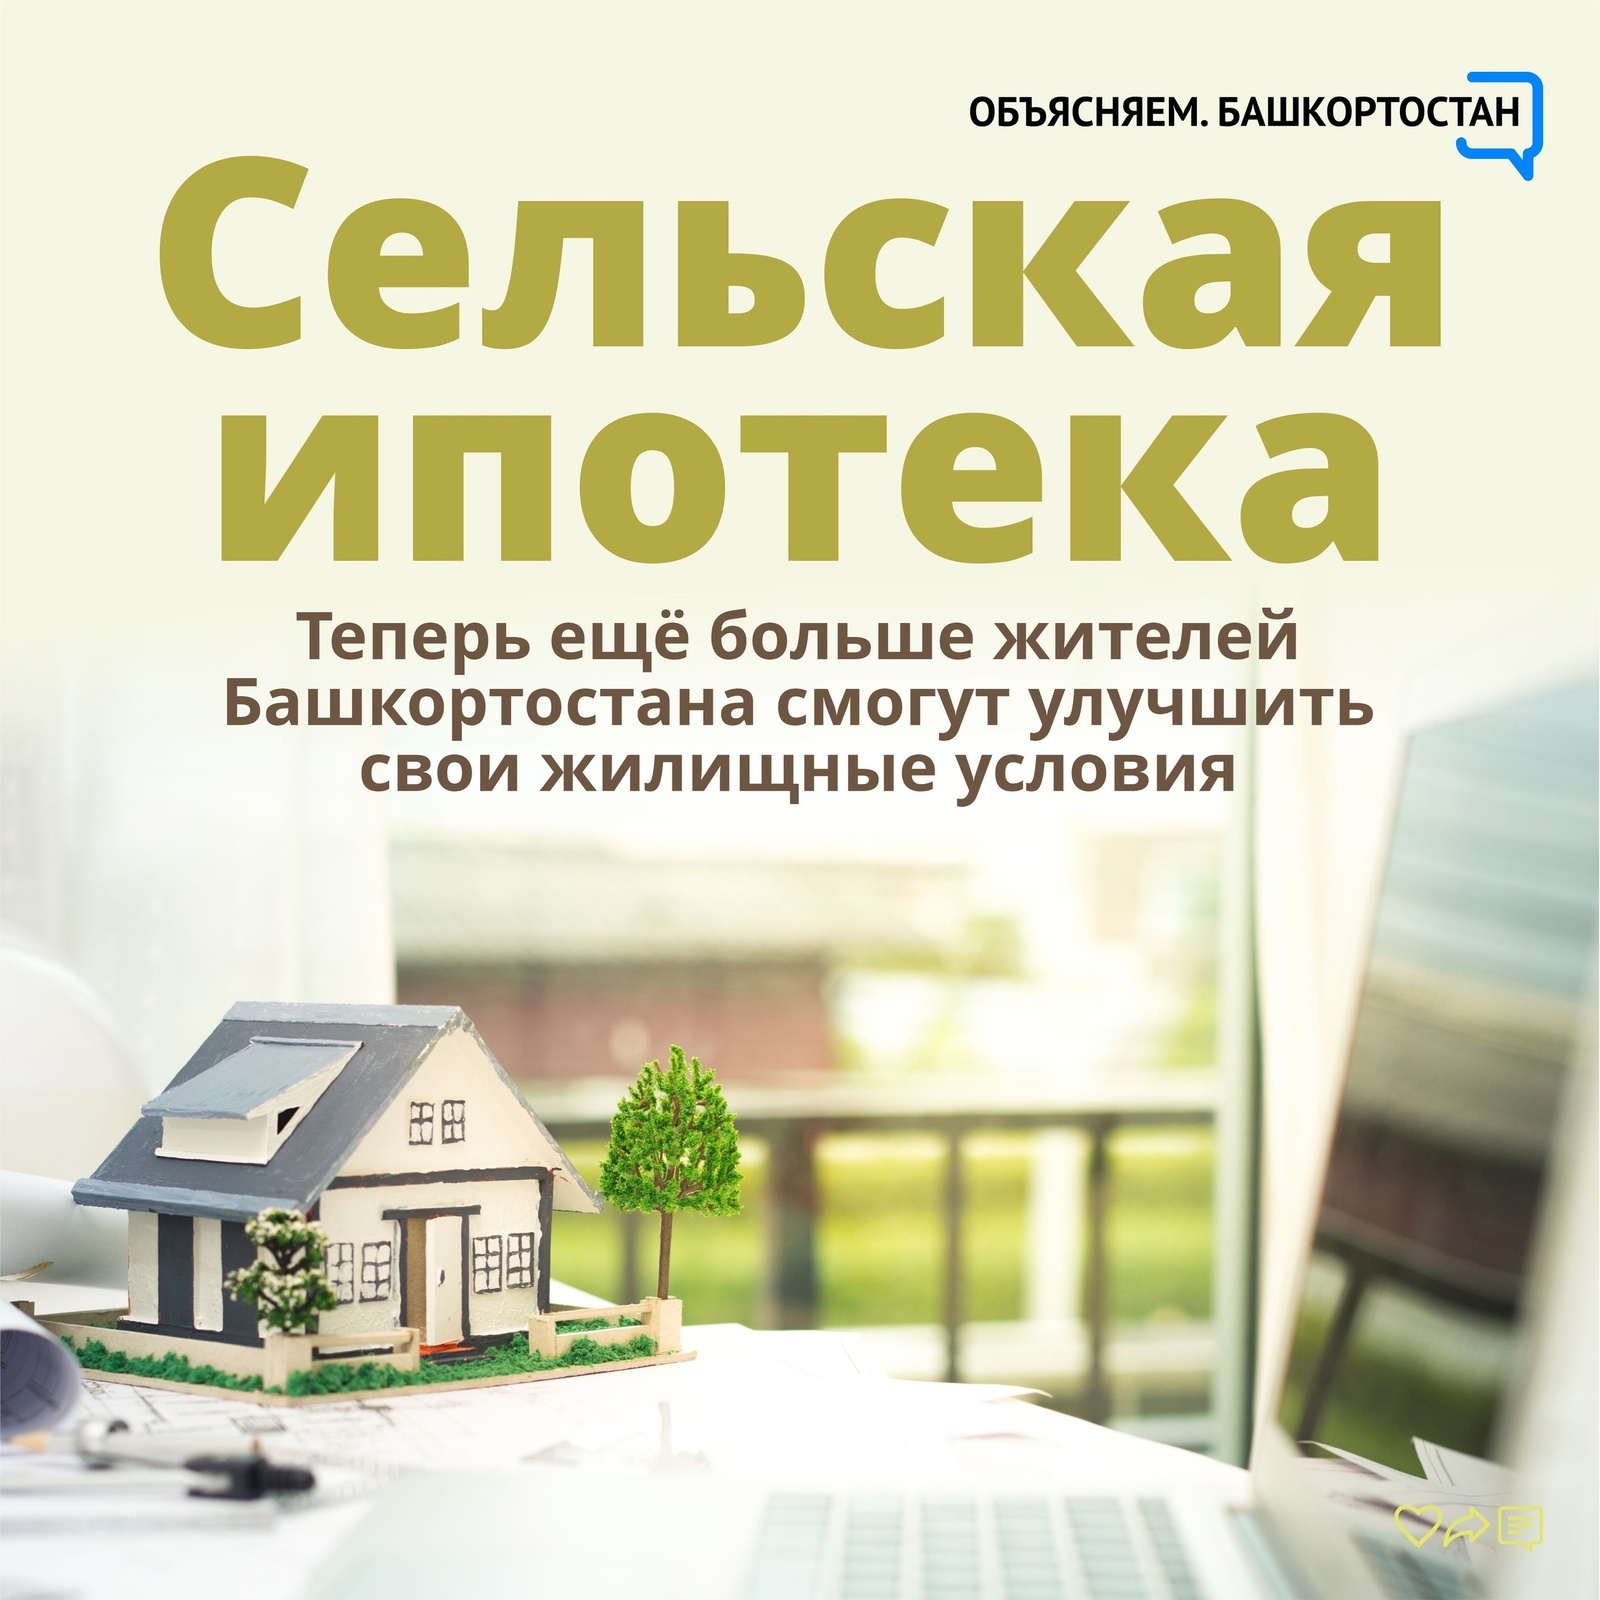 Теперь ещё больше жителей Башкортостана смогут улучшить свои жилищные условия